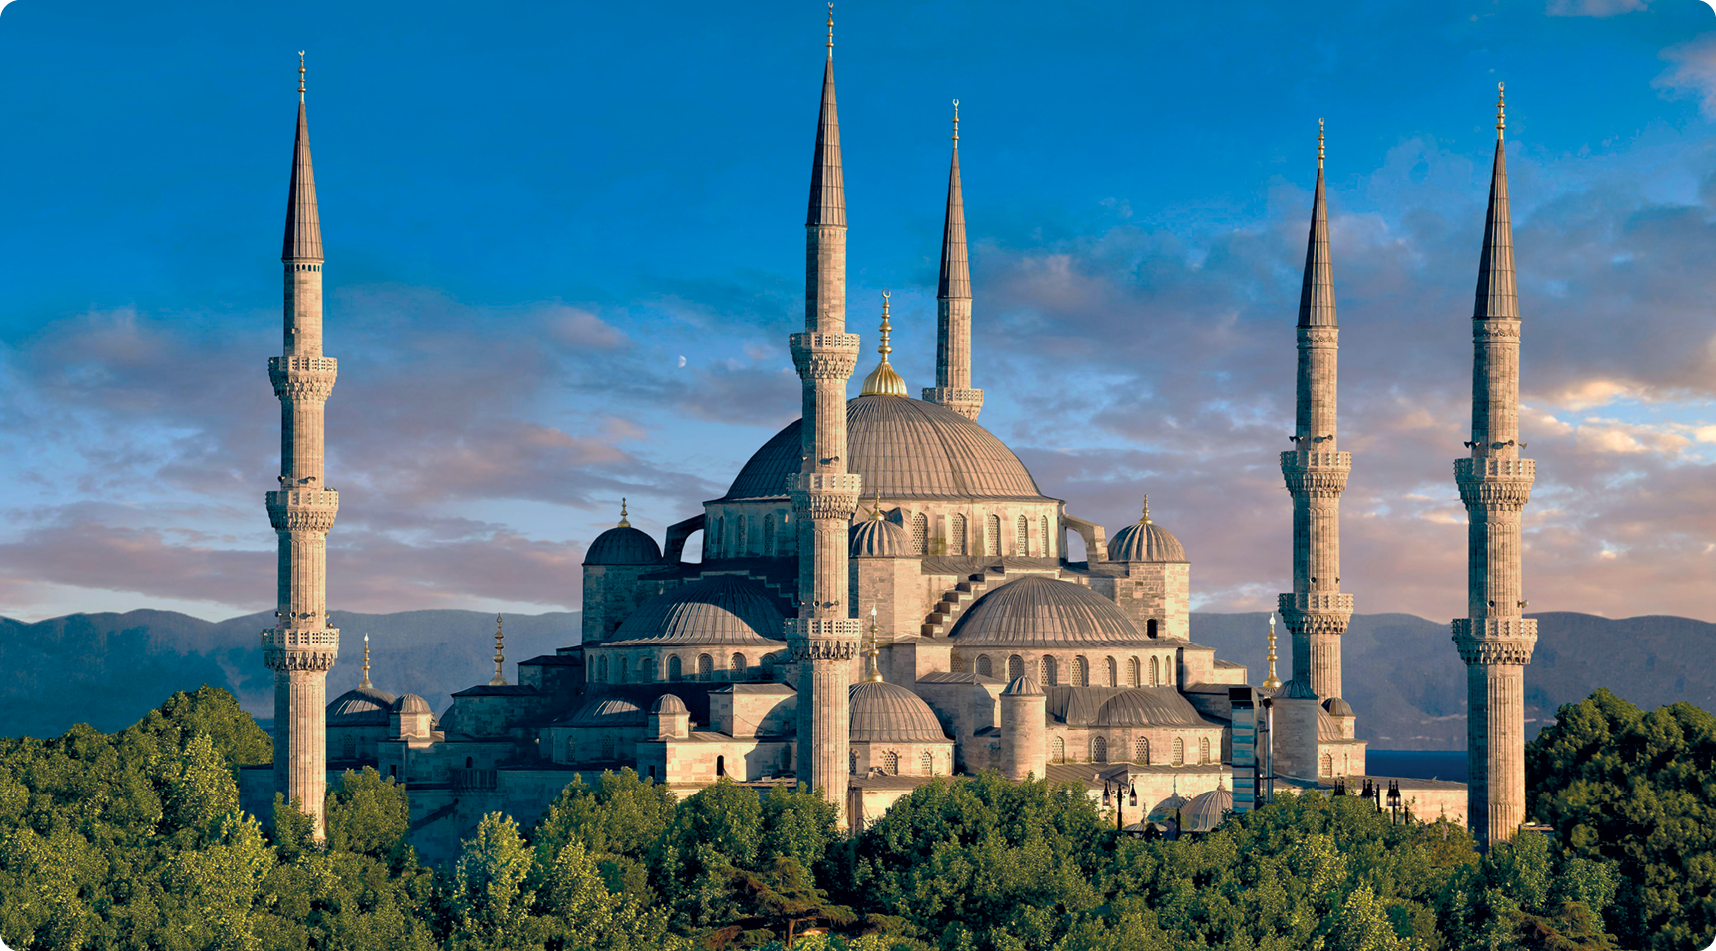 Fotografia. Mesquita composta por uma cúpula grande central, ao redor, cúpulas menores. Nas laterais, cinco grandes colunas ornamentadas. Ao redor, copas de árvores.